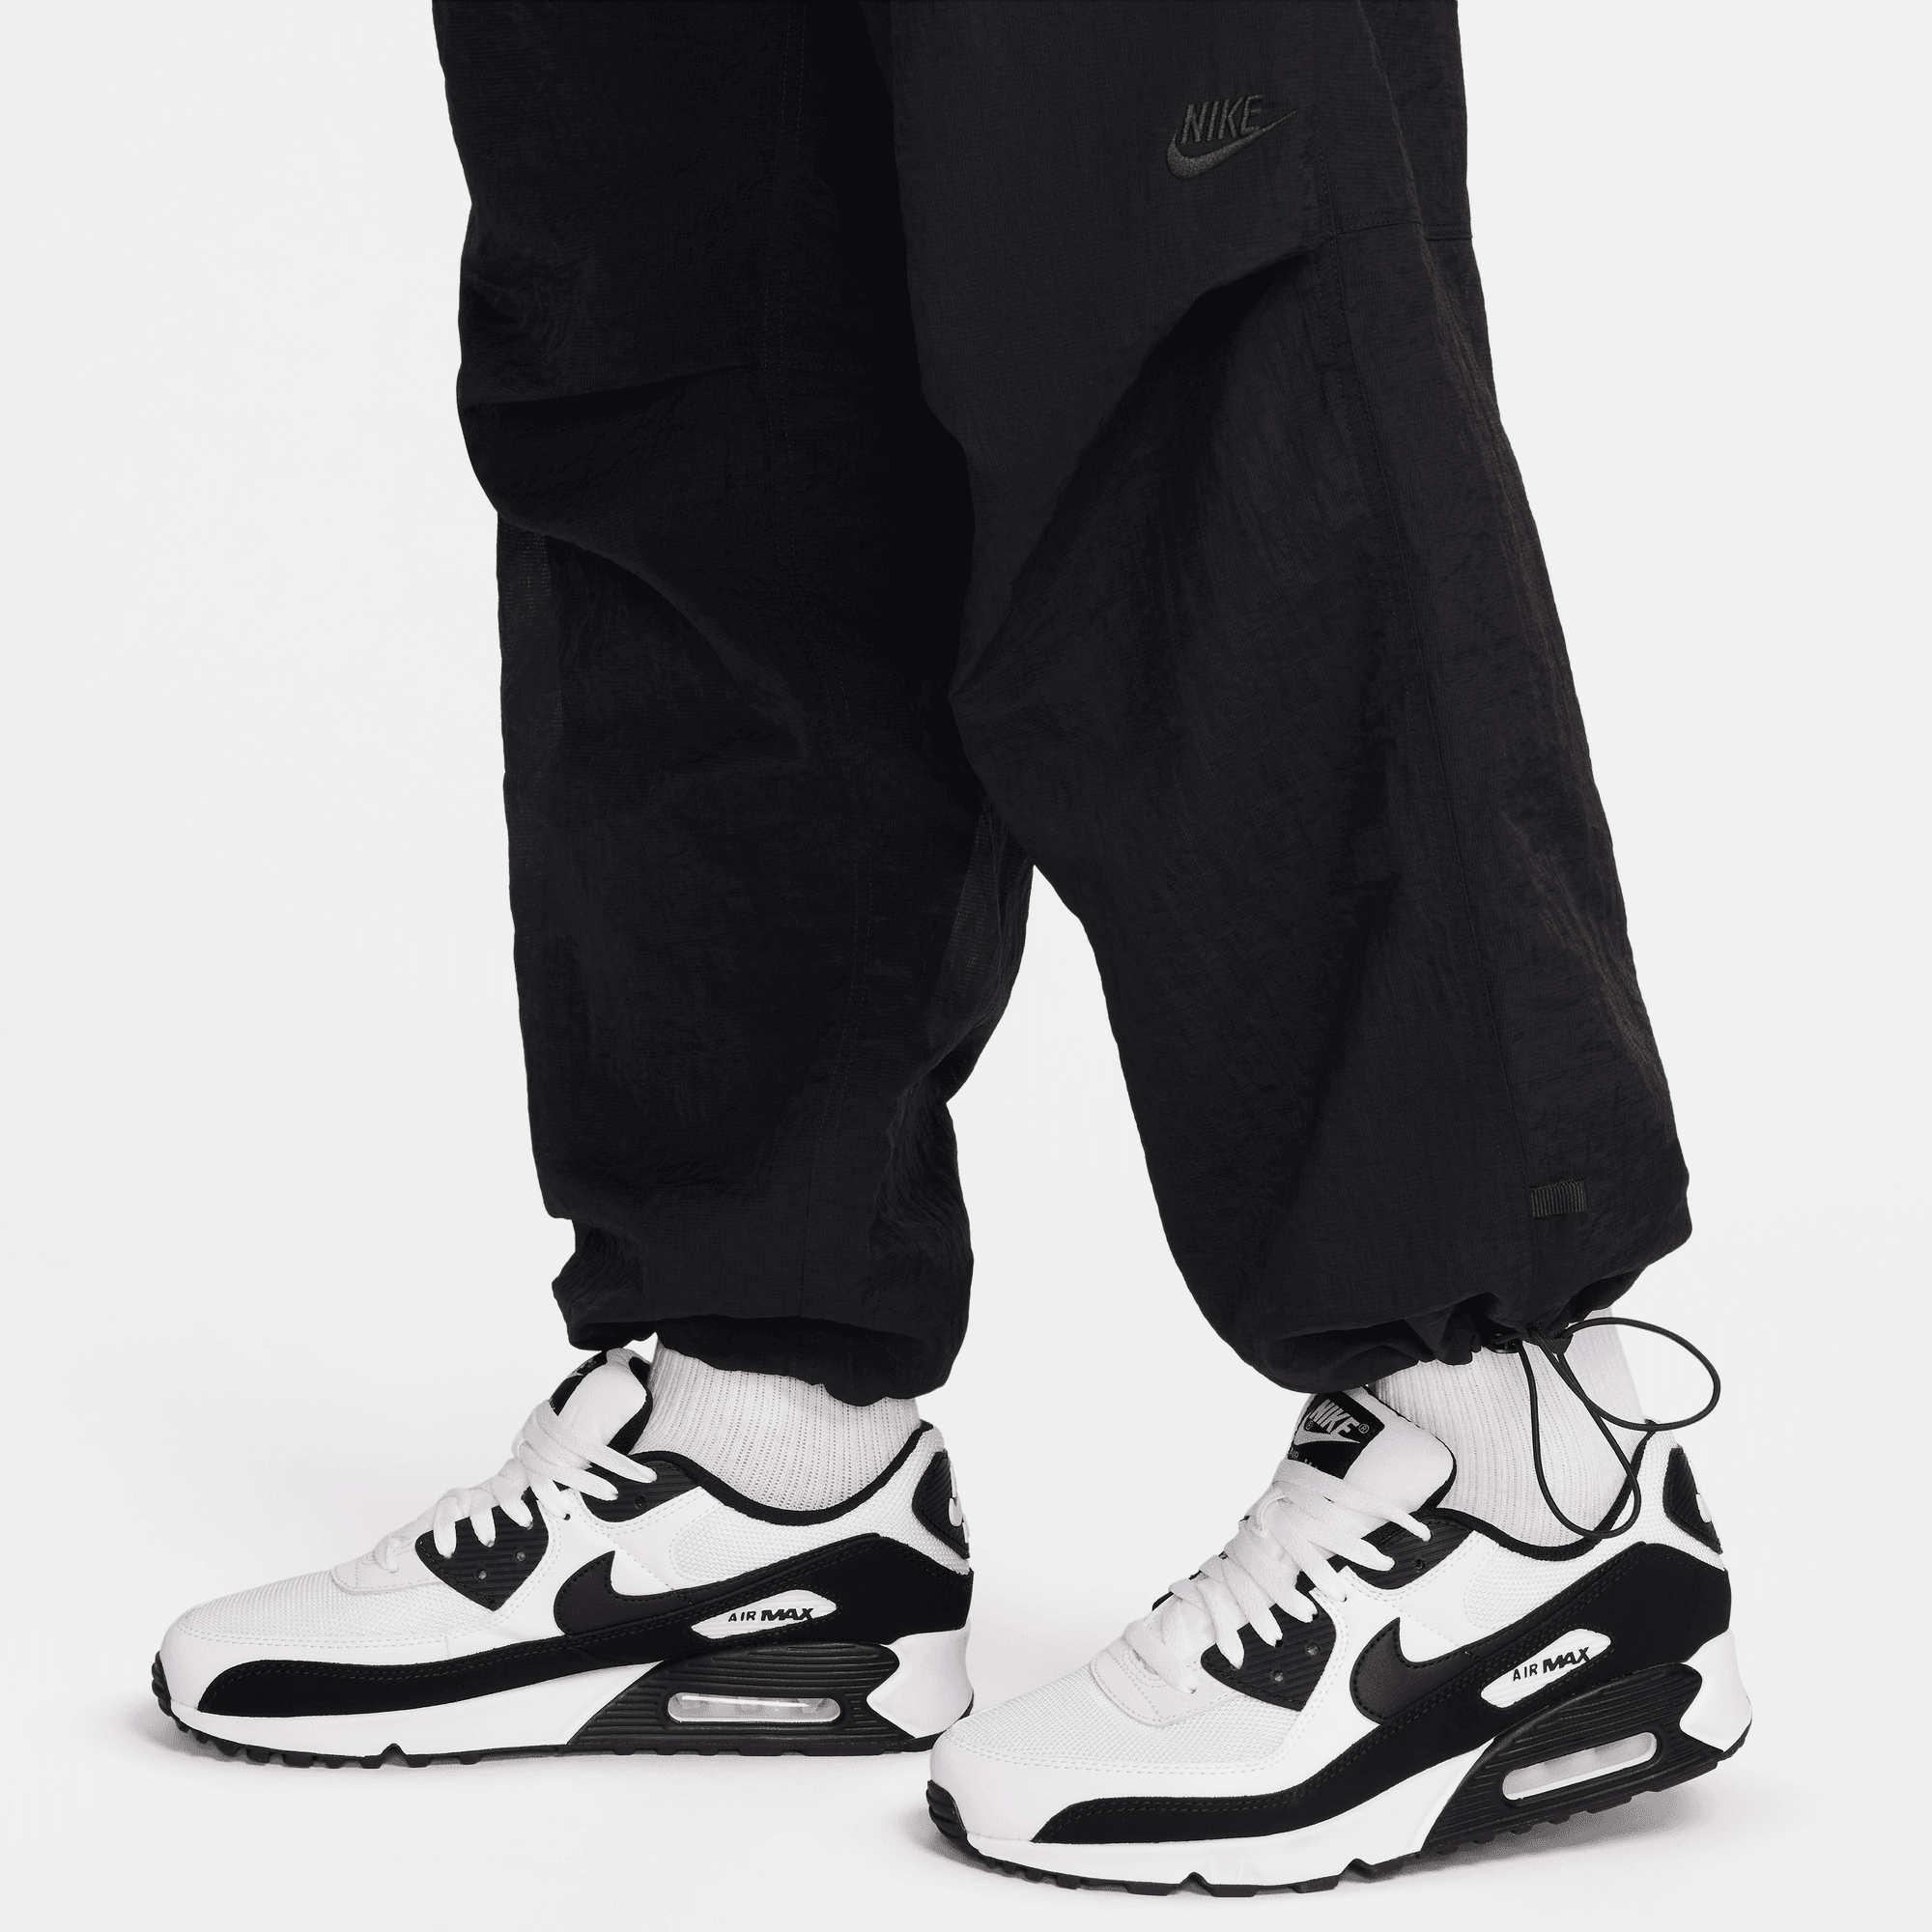 Nike Sportswear Tech Pack Black Woven Lined Pants